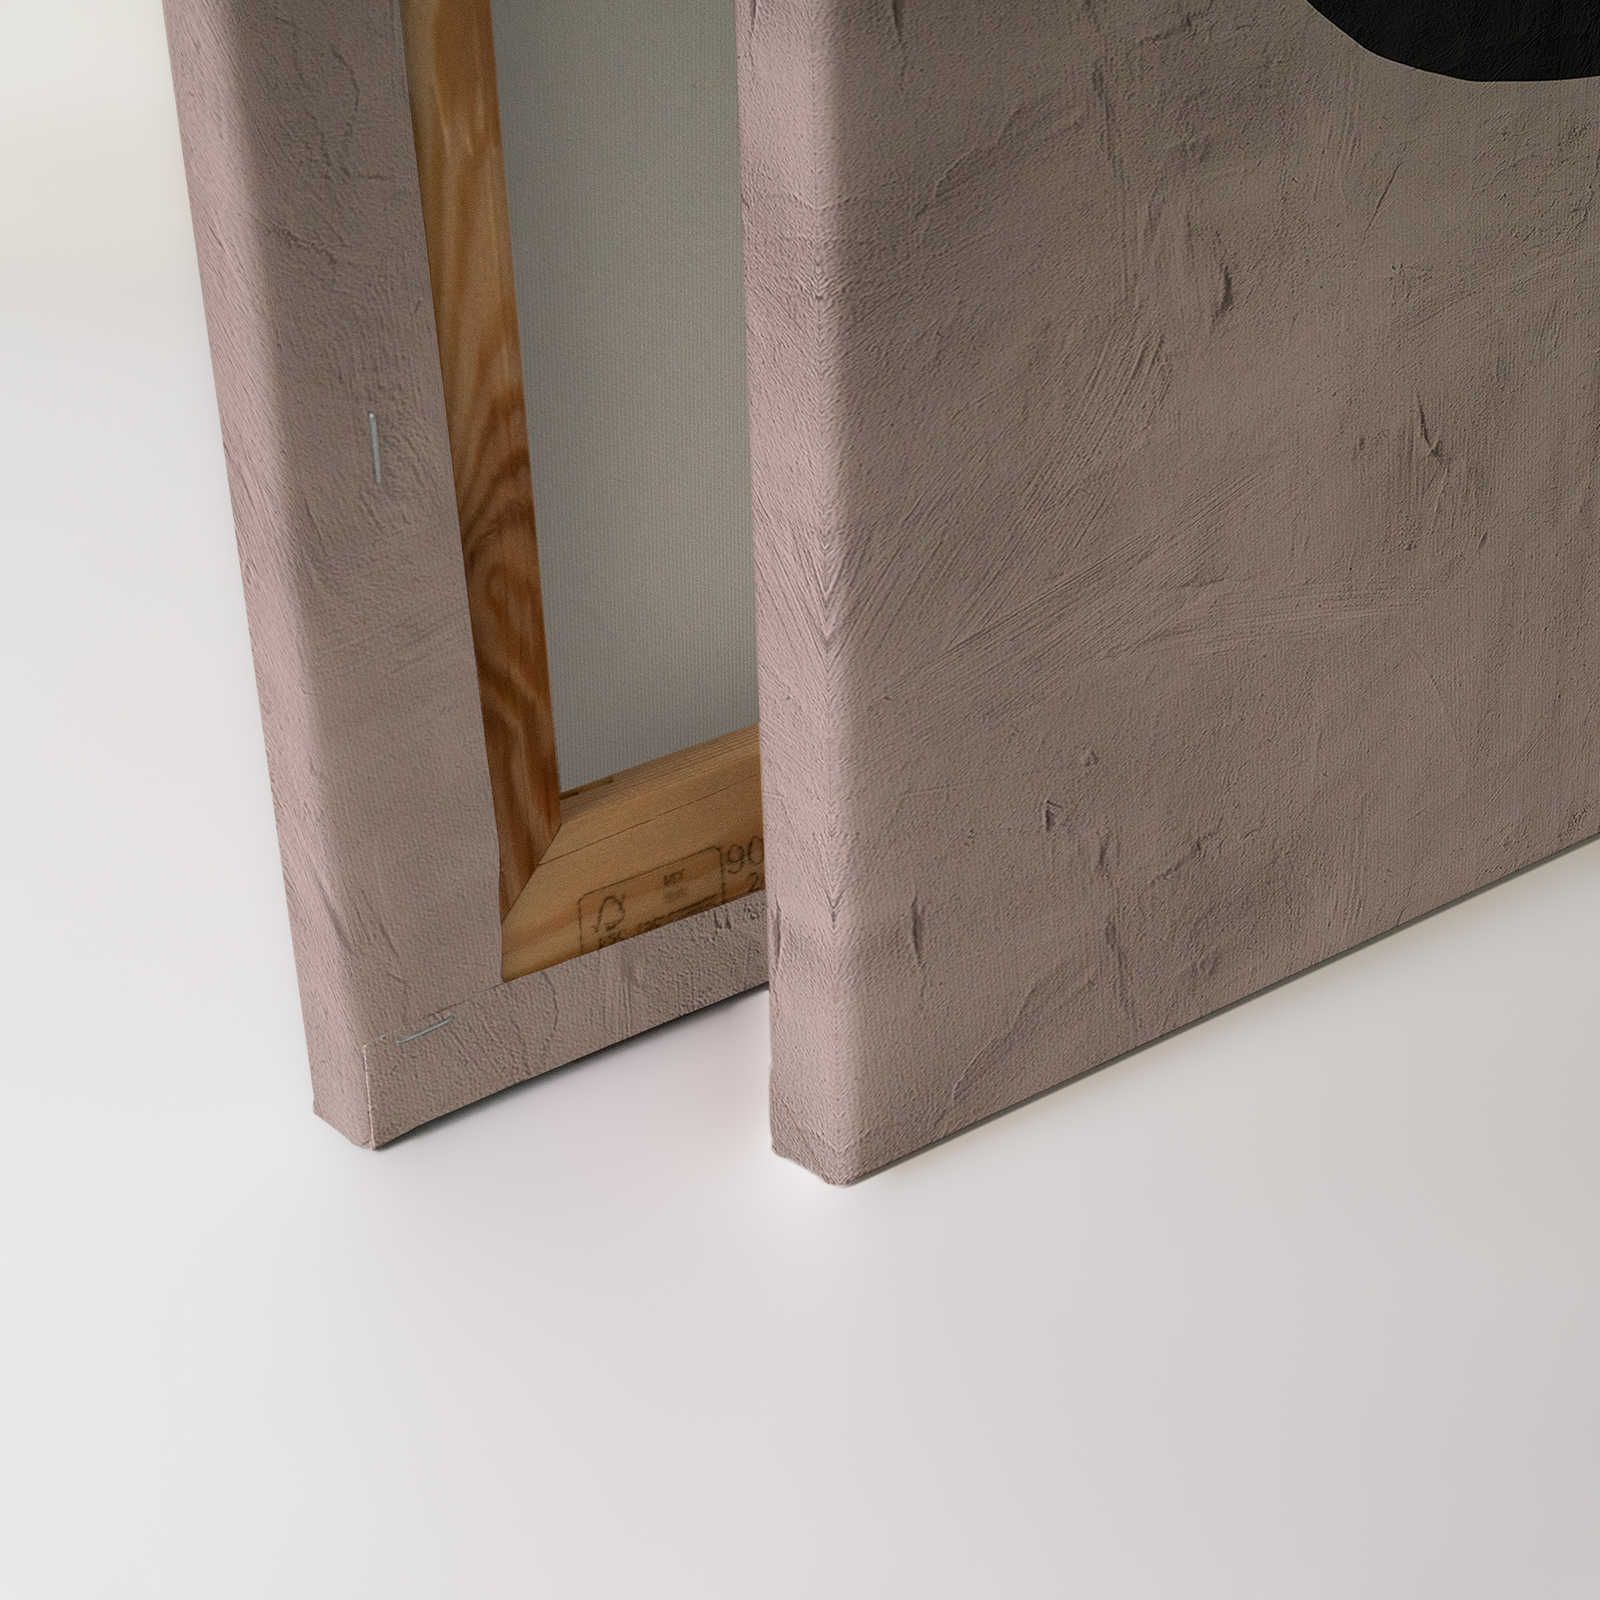             Santa Fe 2 - Lehmwand Leinwandbild mit Colour Block Design – 0,90 m x 0,60 m
        